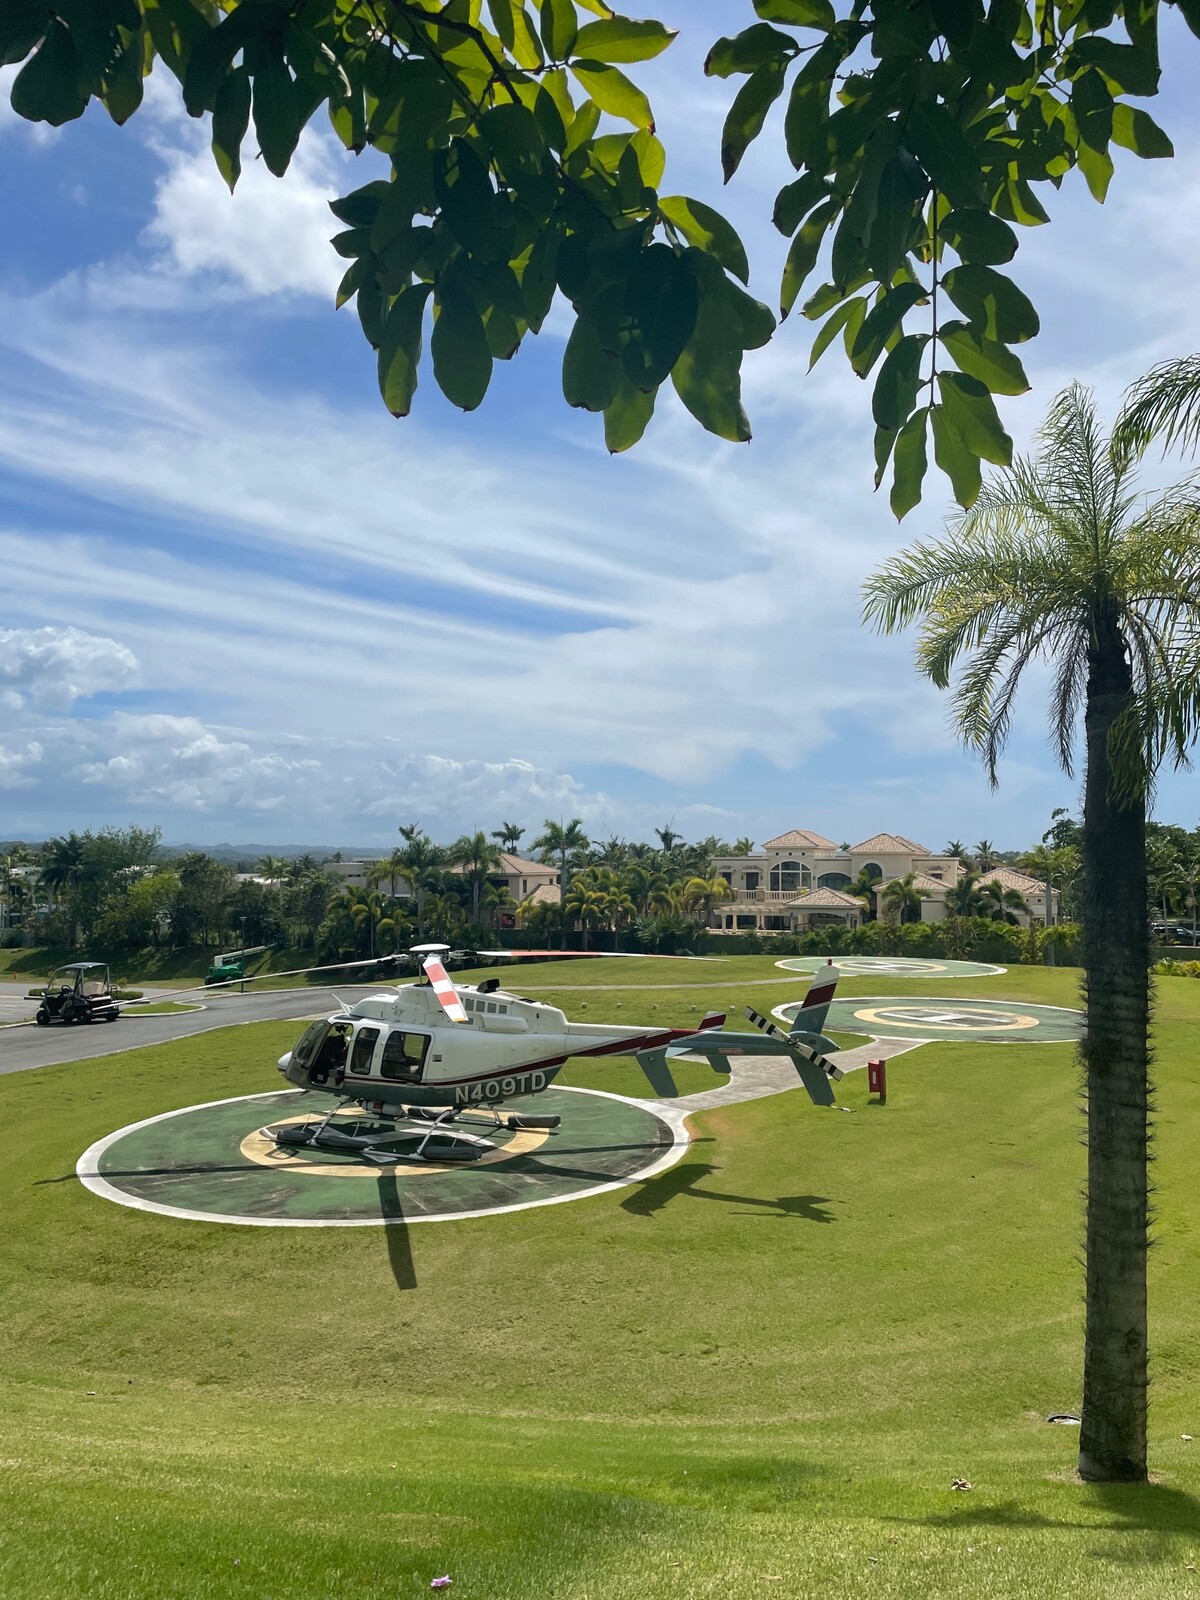 Súkromná helikoptéra v Portoriku.